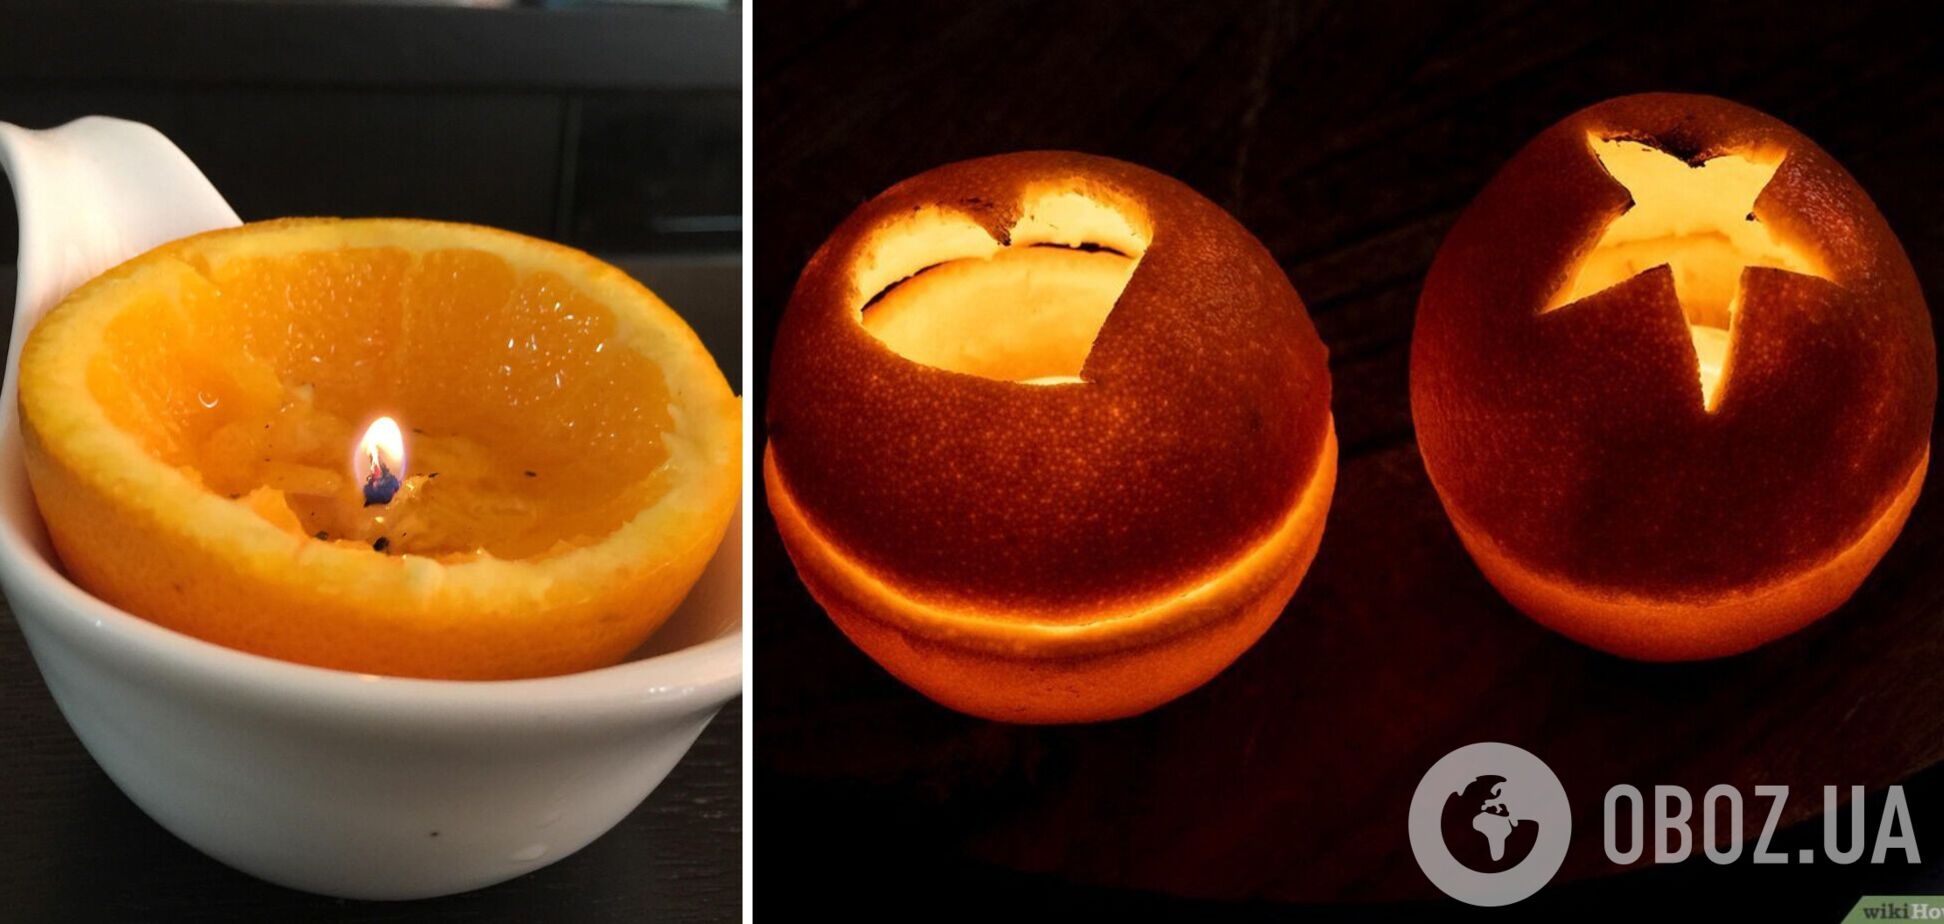 Как сделать ароматную свечу из апельсина на новогодний стол. Видео